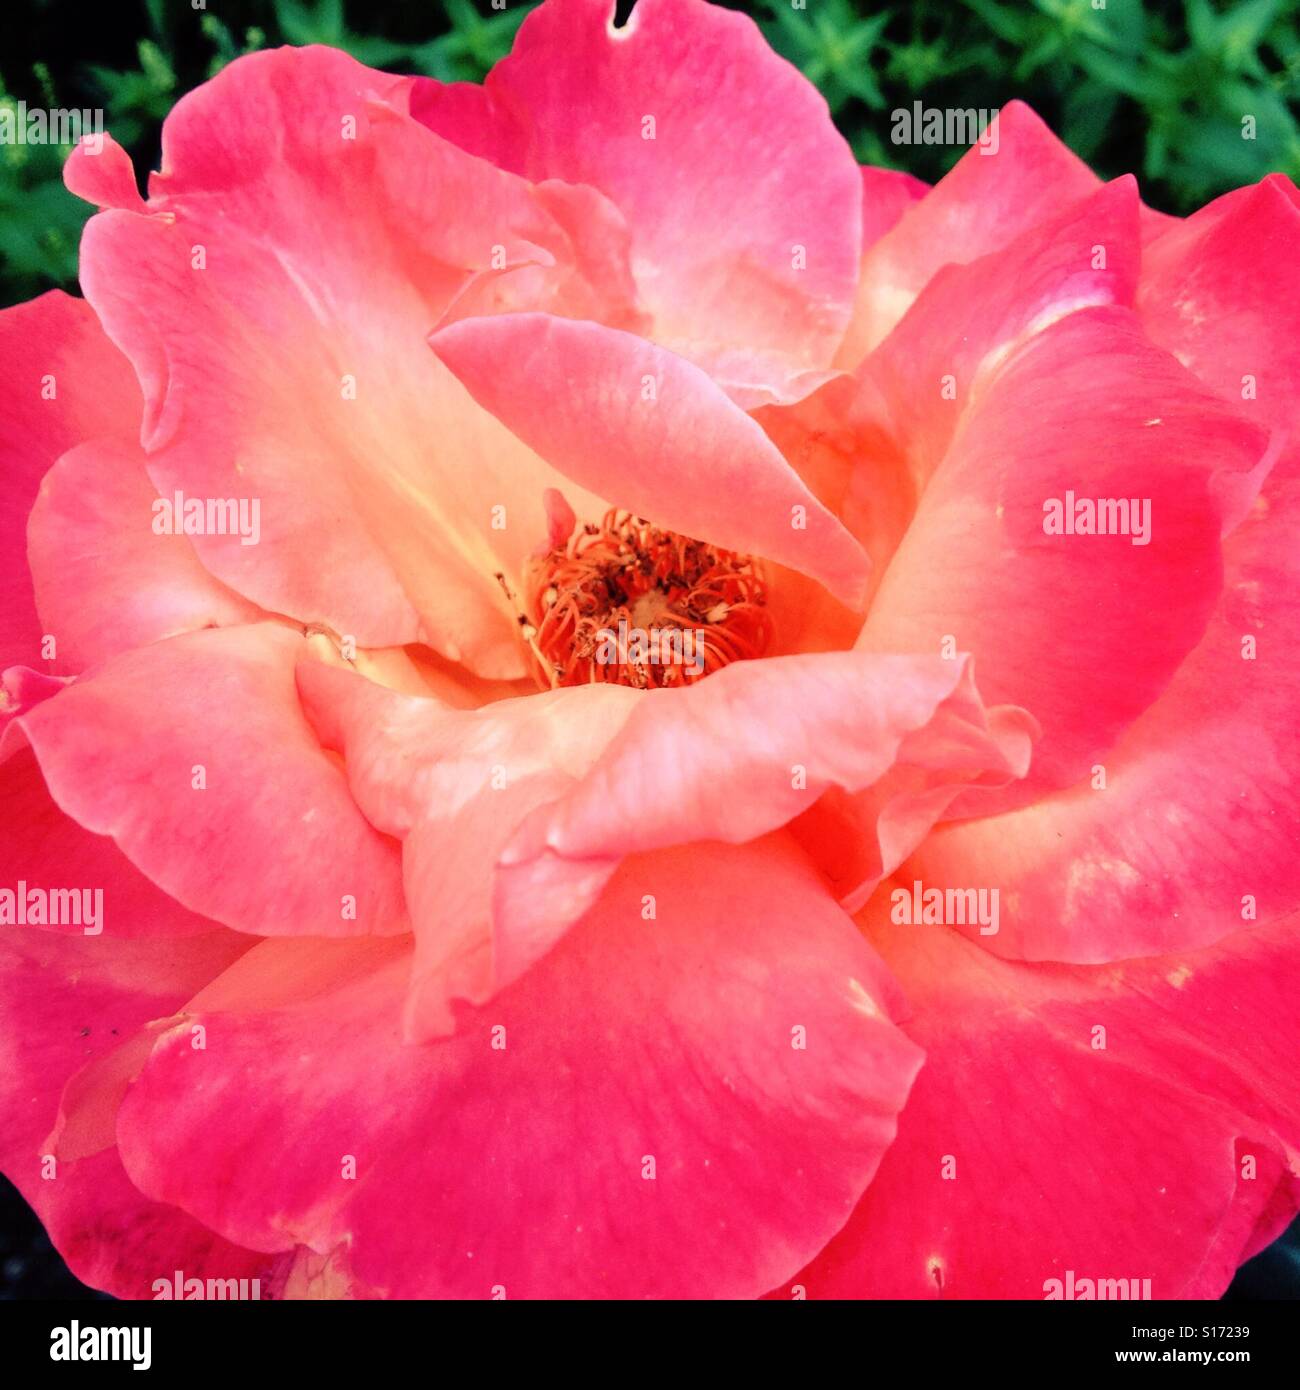 Closeup of a pink rose Stock Photo